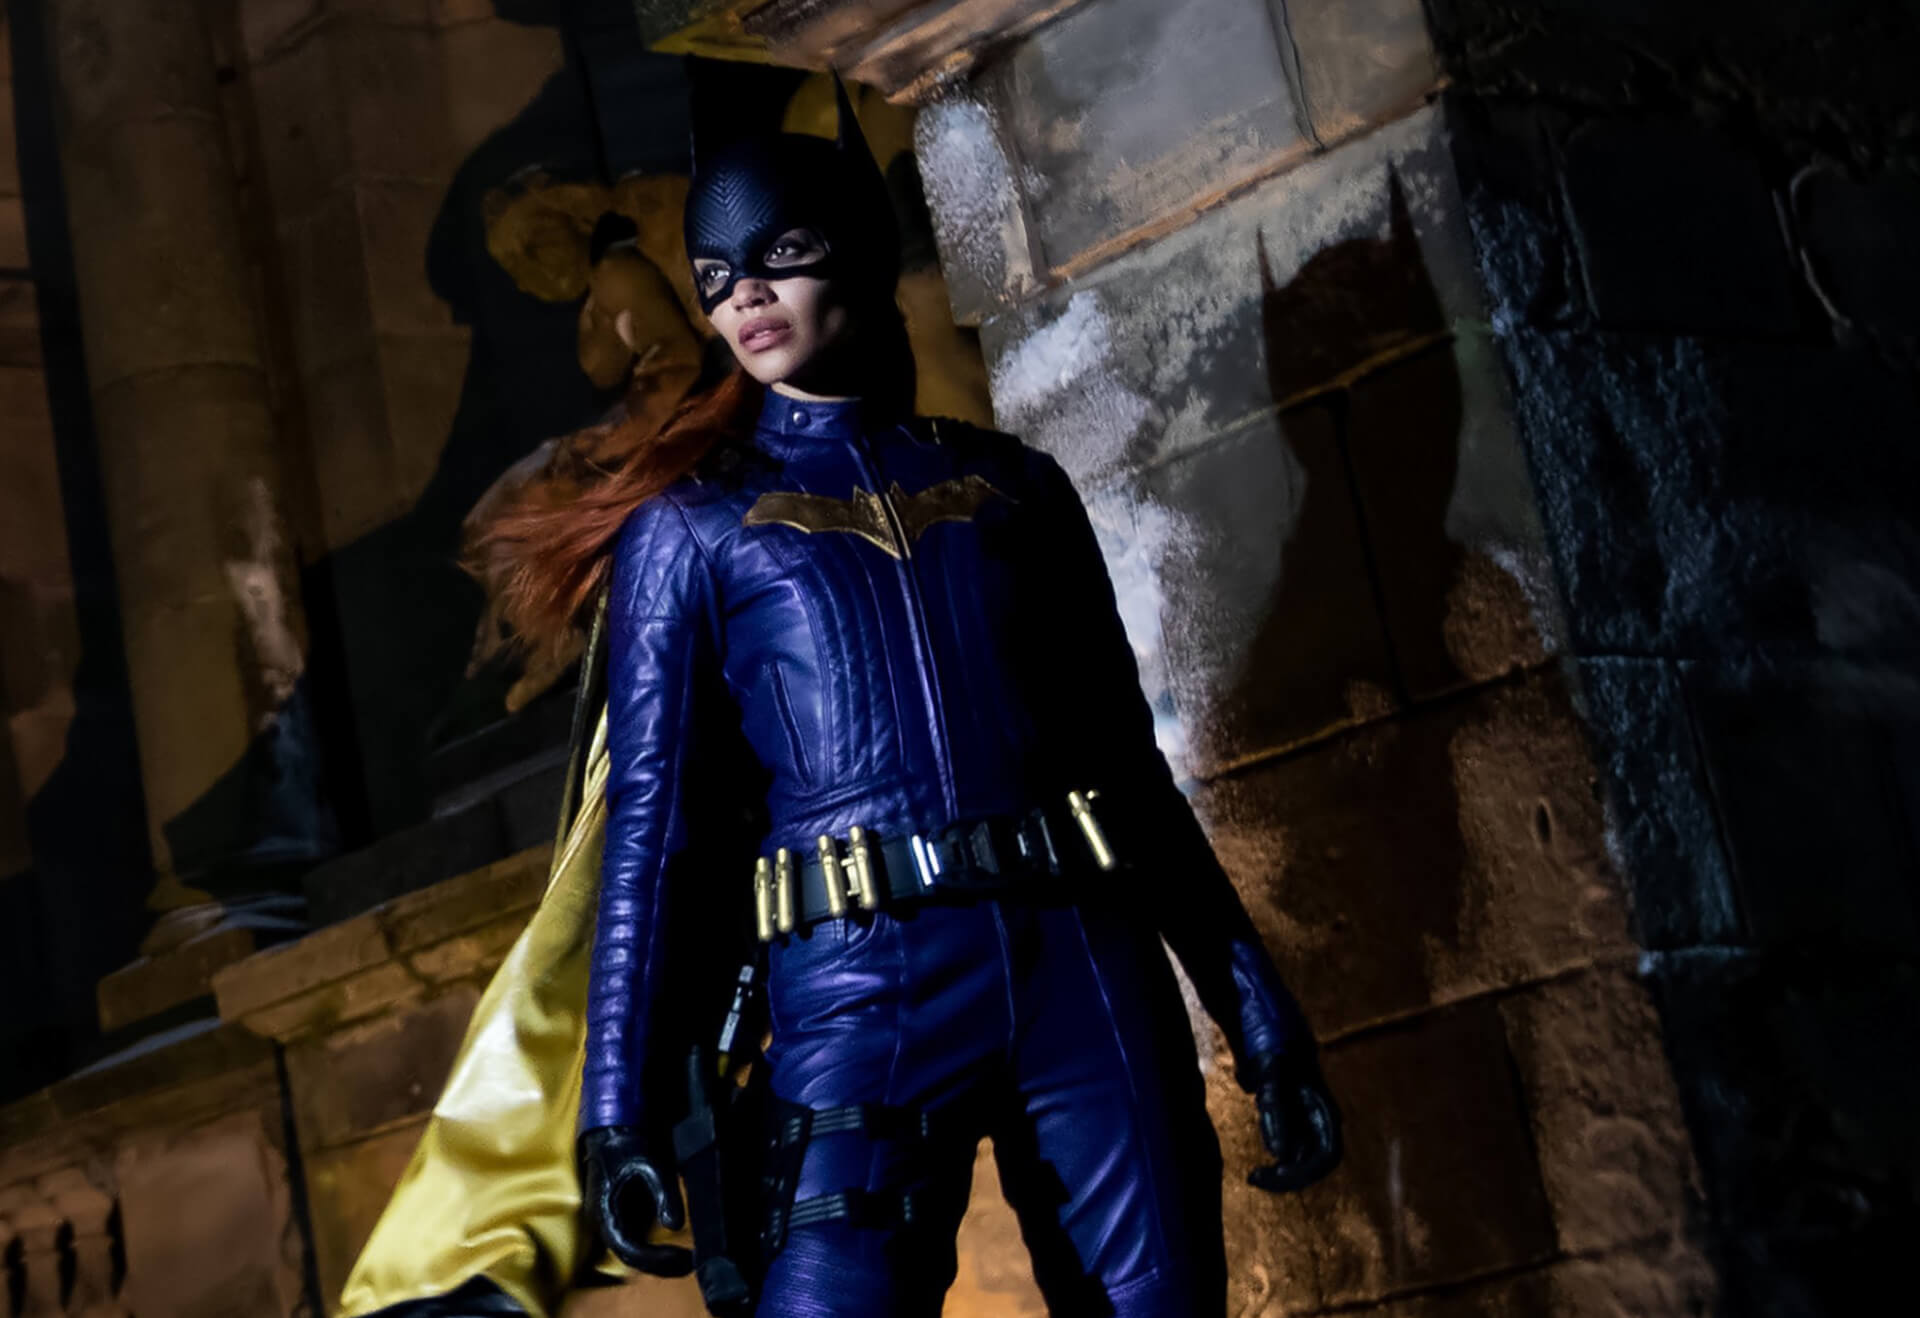 A Warner Bros. Discovery vezérigazgatója megvédi a Batgirl törlését: “Nem adunk ki semmilyen filmet, mielőtt kész lenne”